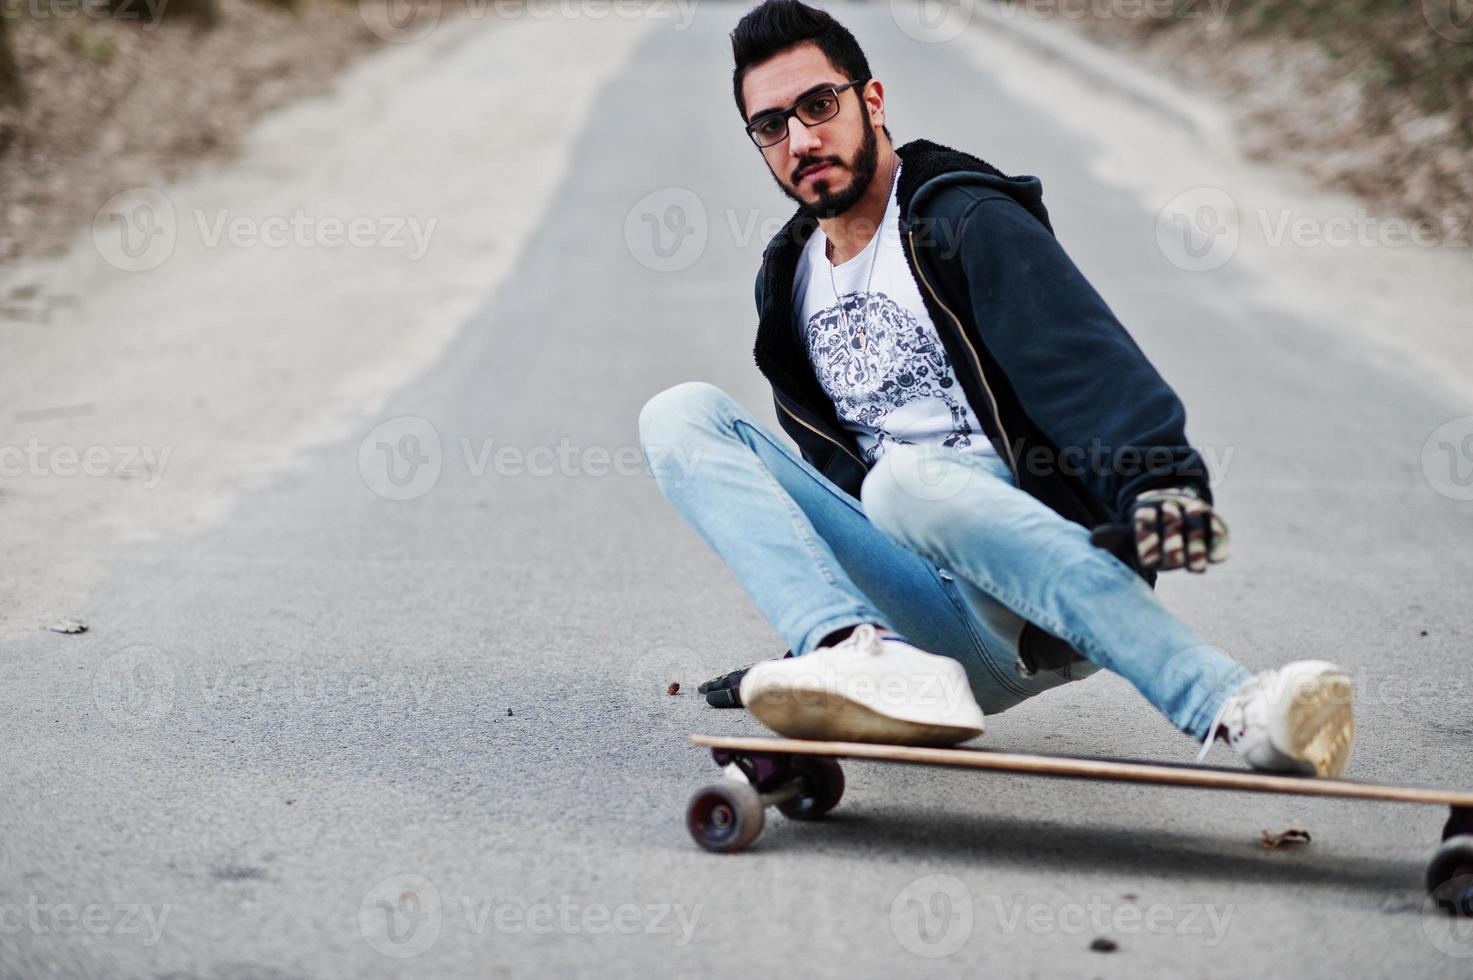 straatstijl Arabische man in bril met longboard longboarden op de weg. foto